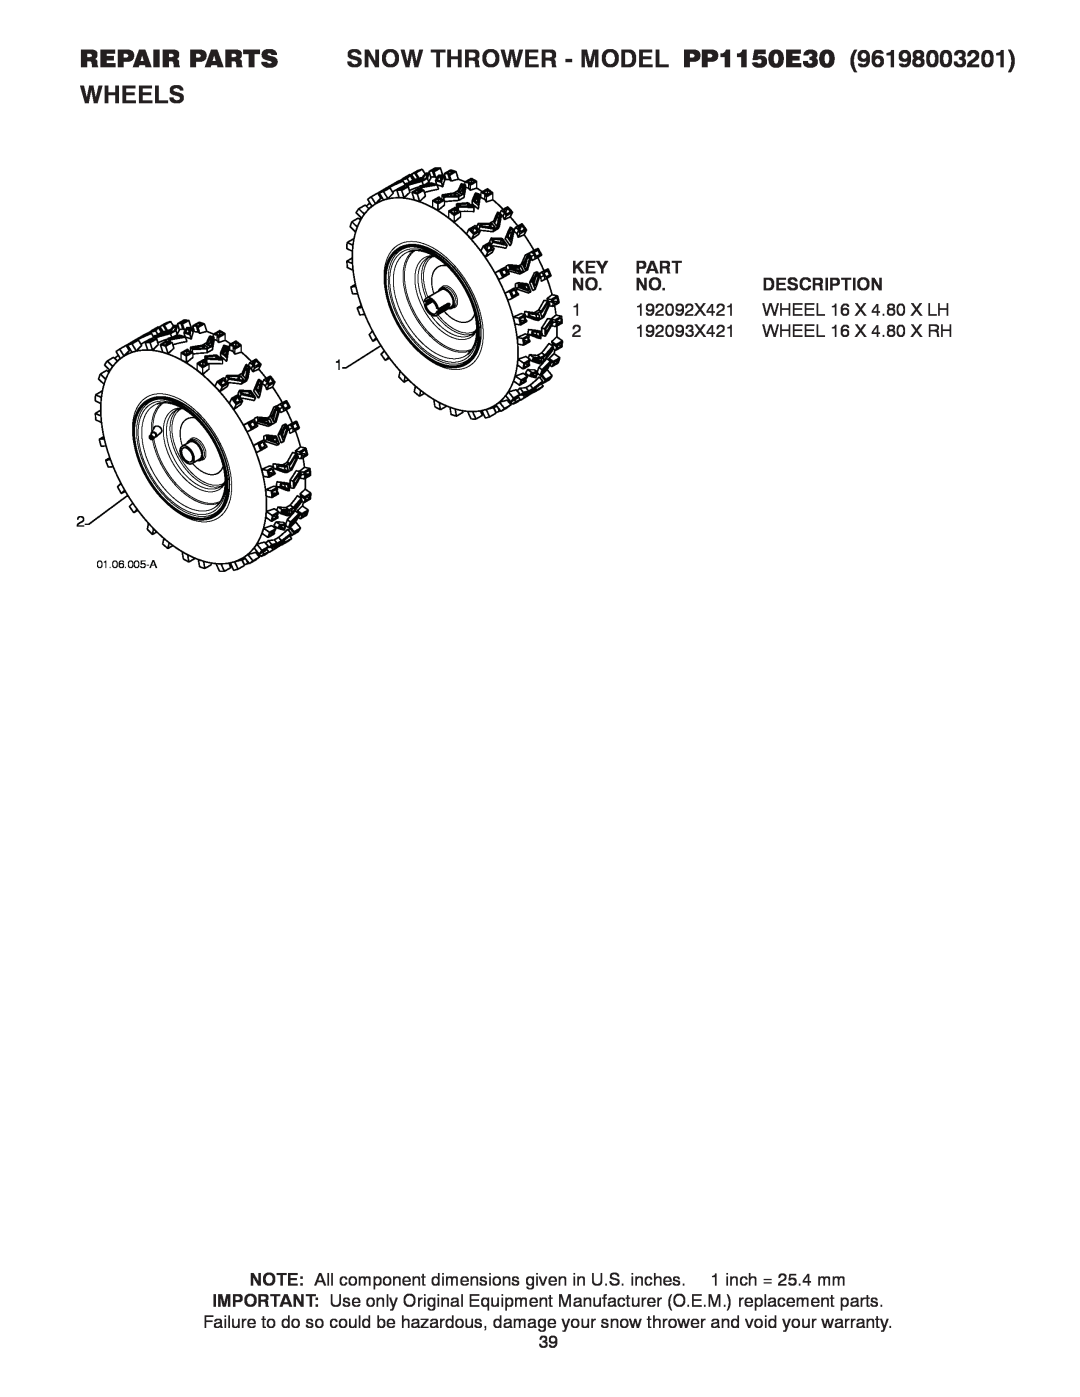 Poulan owner manual REPAIR PARTS SNOW THROWER - MODEL PP1150E30, Wheels, Part, Description, 01.06.005-A 